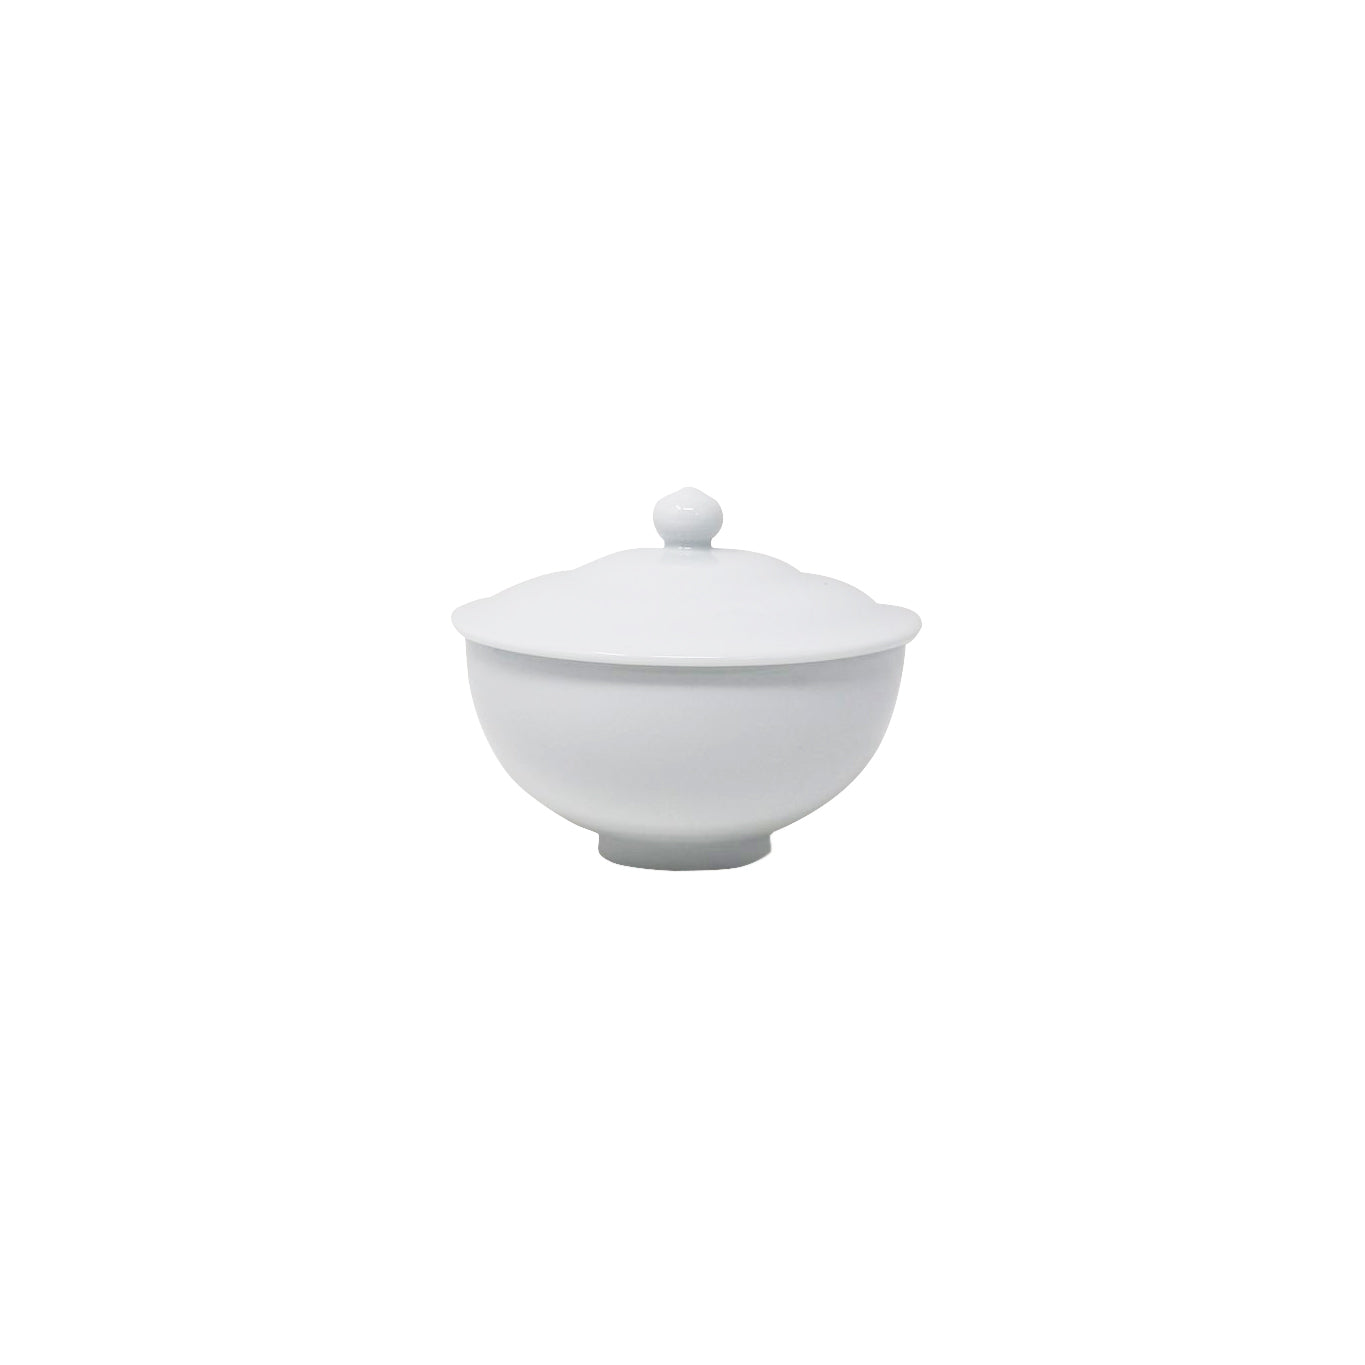 Noritake Lifestyle White Soup Cup 260ml (No Lid)